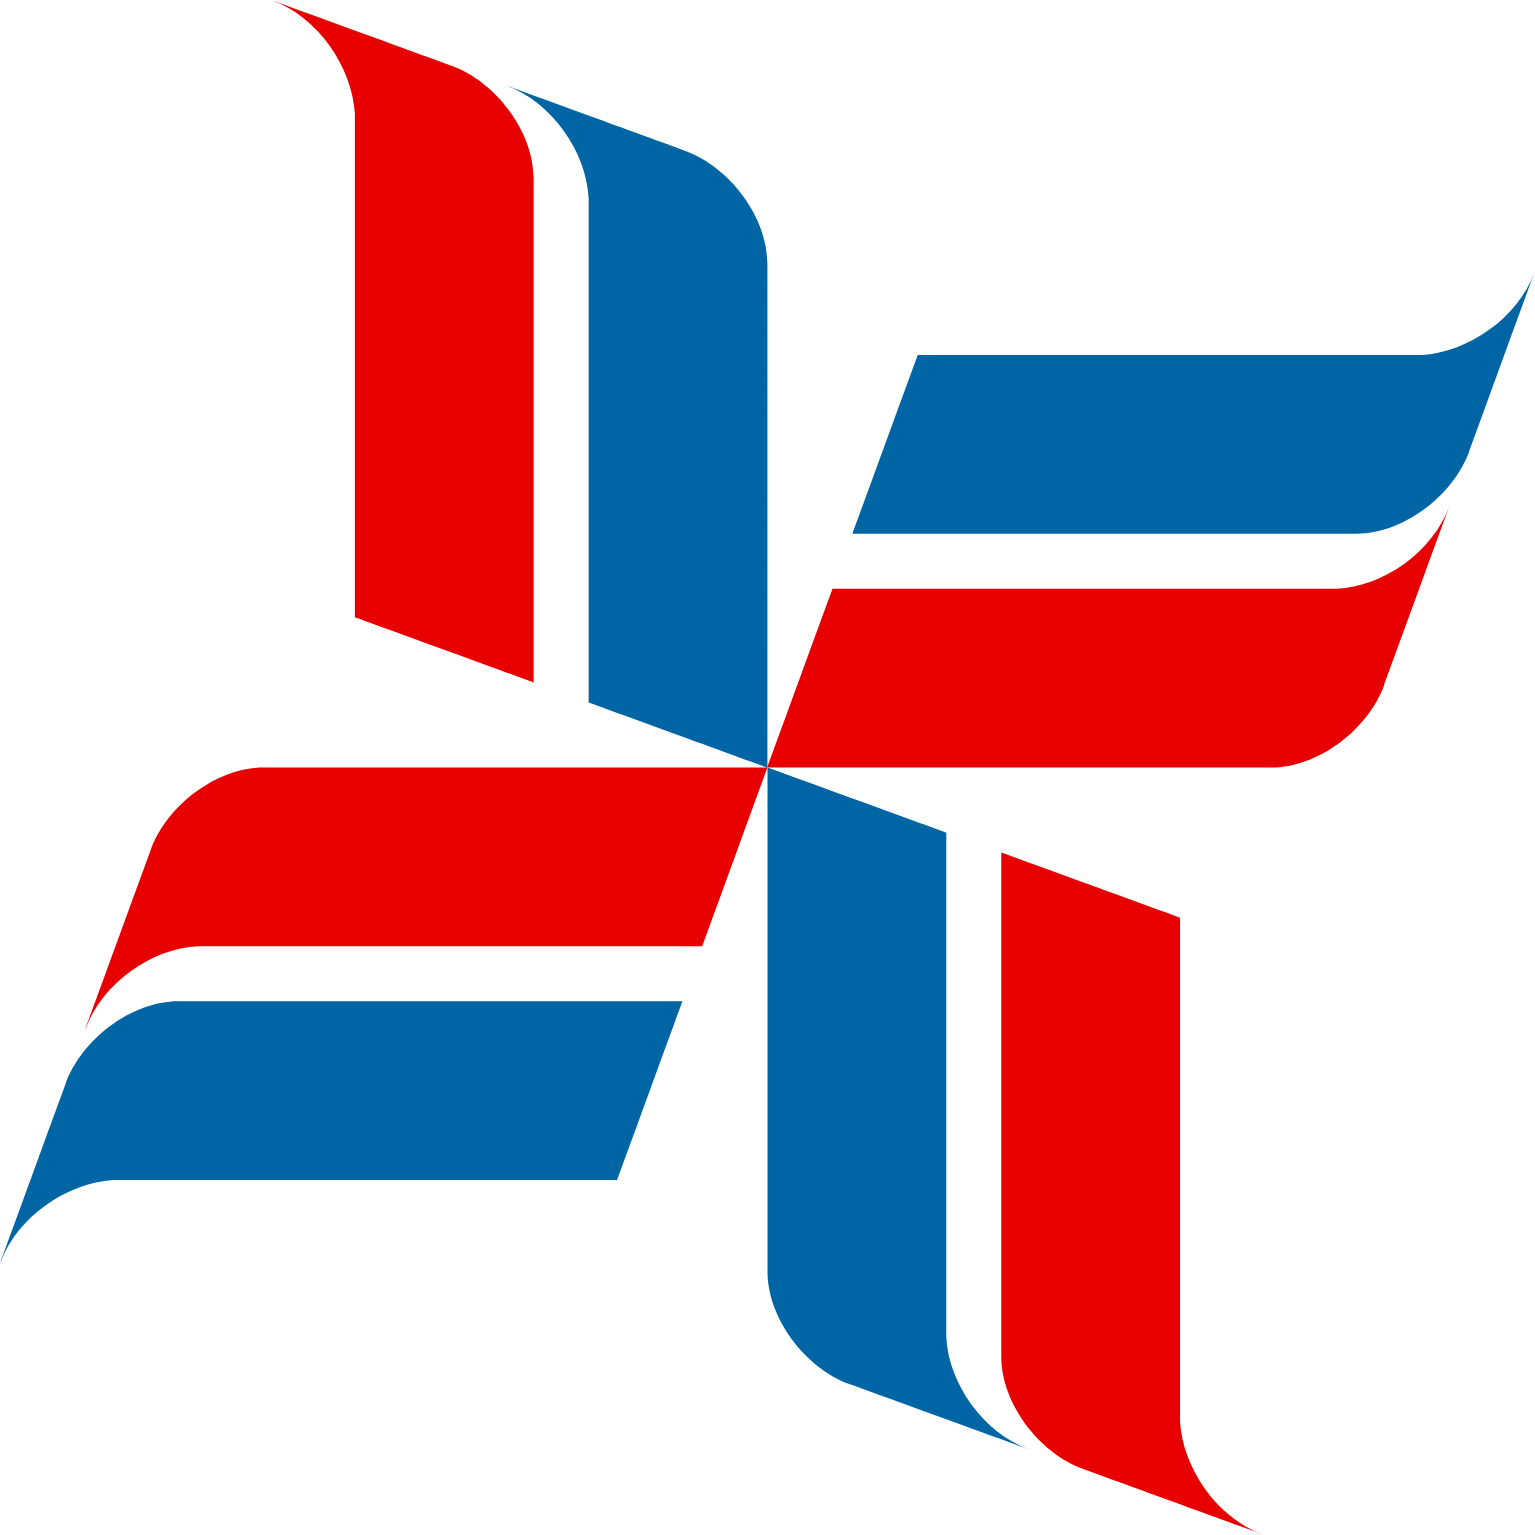 Bristow Group logo (transparent PNG)